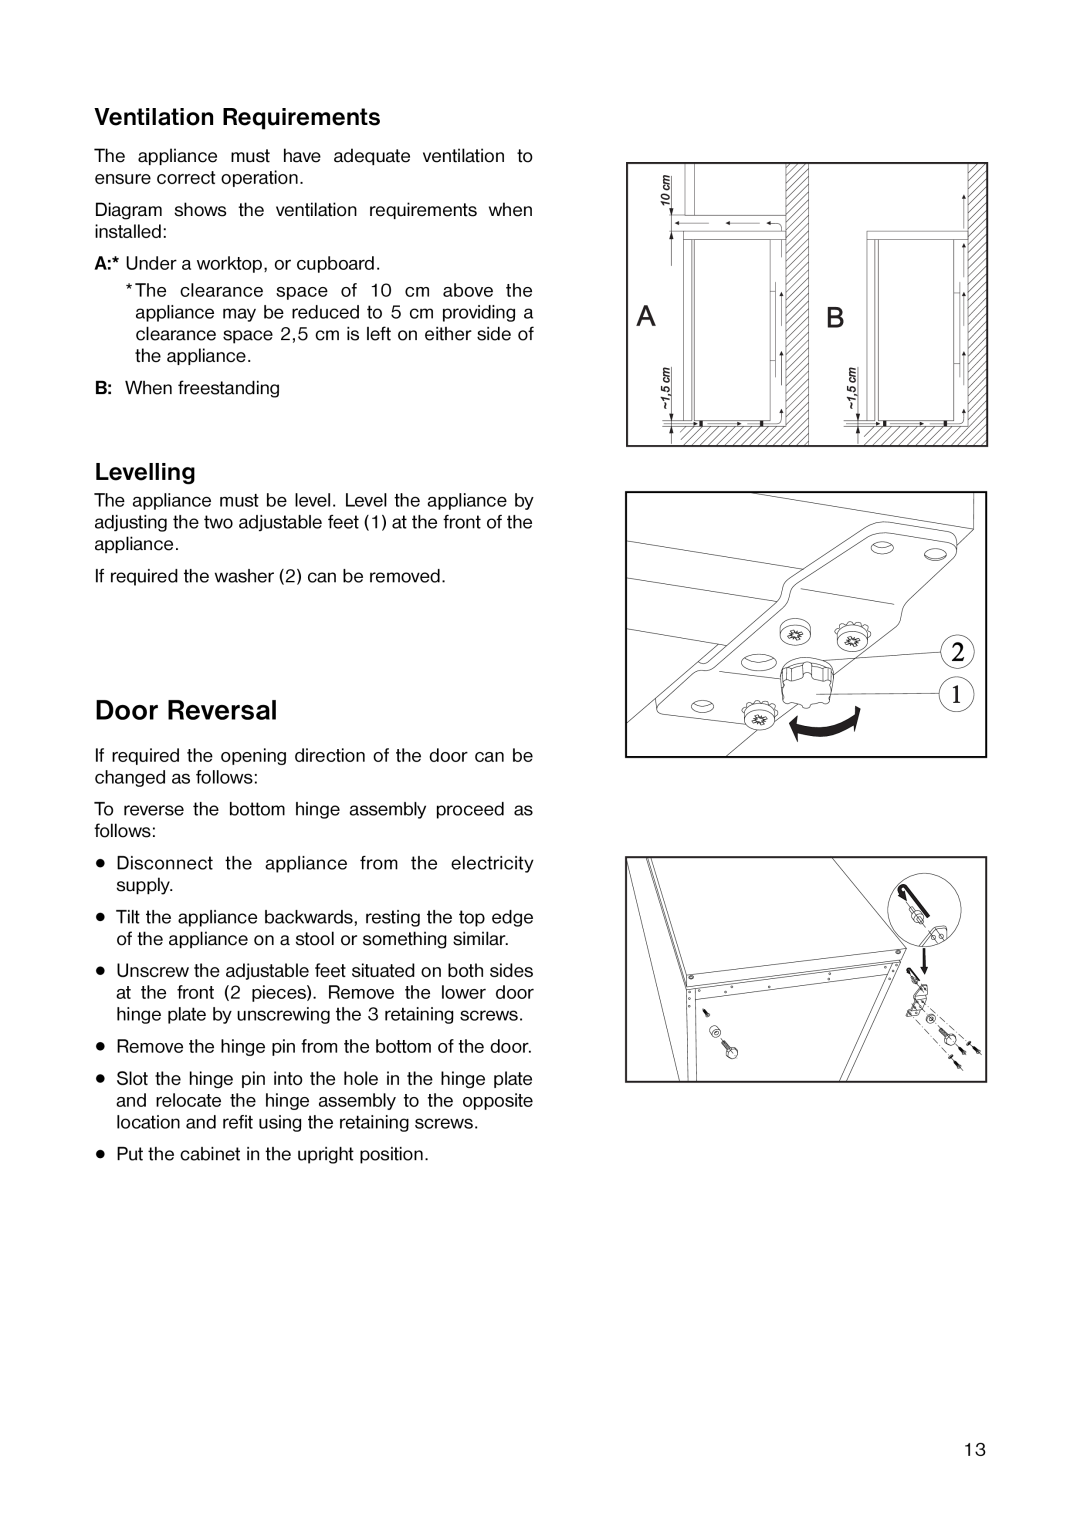 Kelvinator ER 1642 T manual Door Reversal, Ventilation Requirements, Levelling 